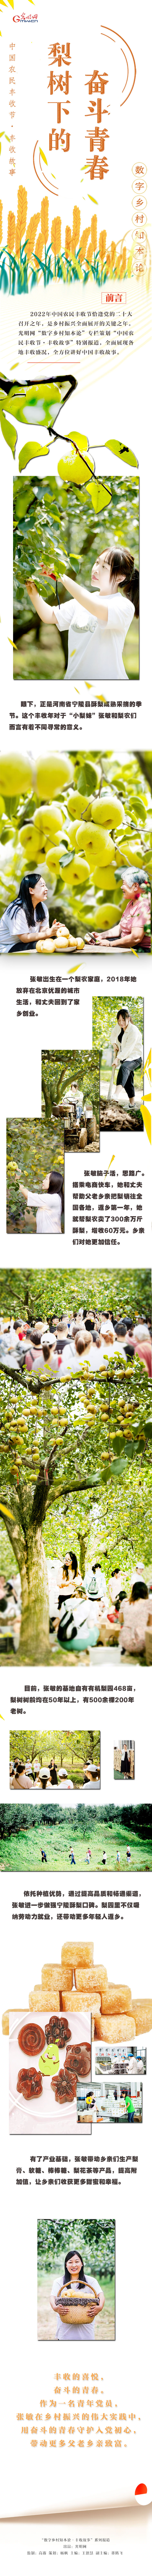 【中国农民丰收节】梨树下的奋斗青春